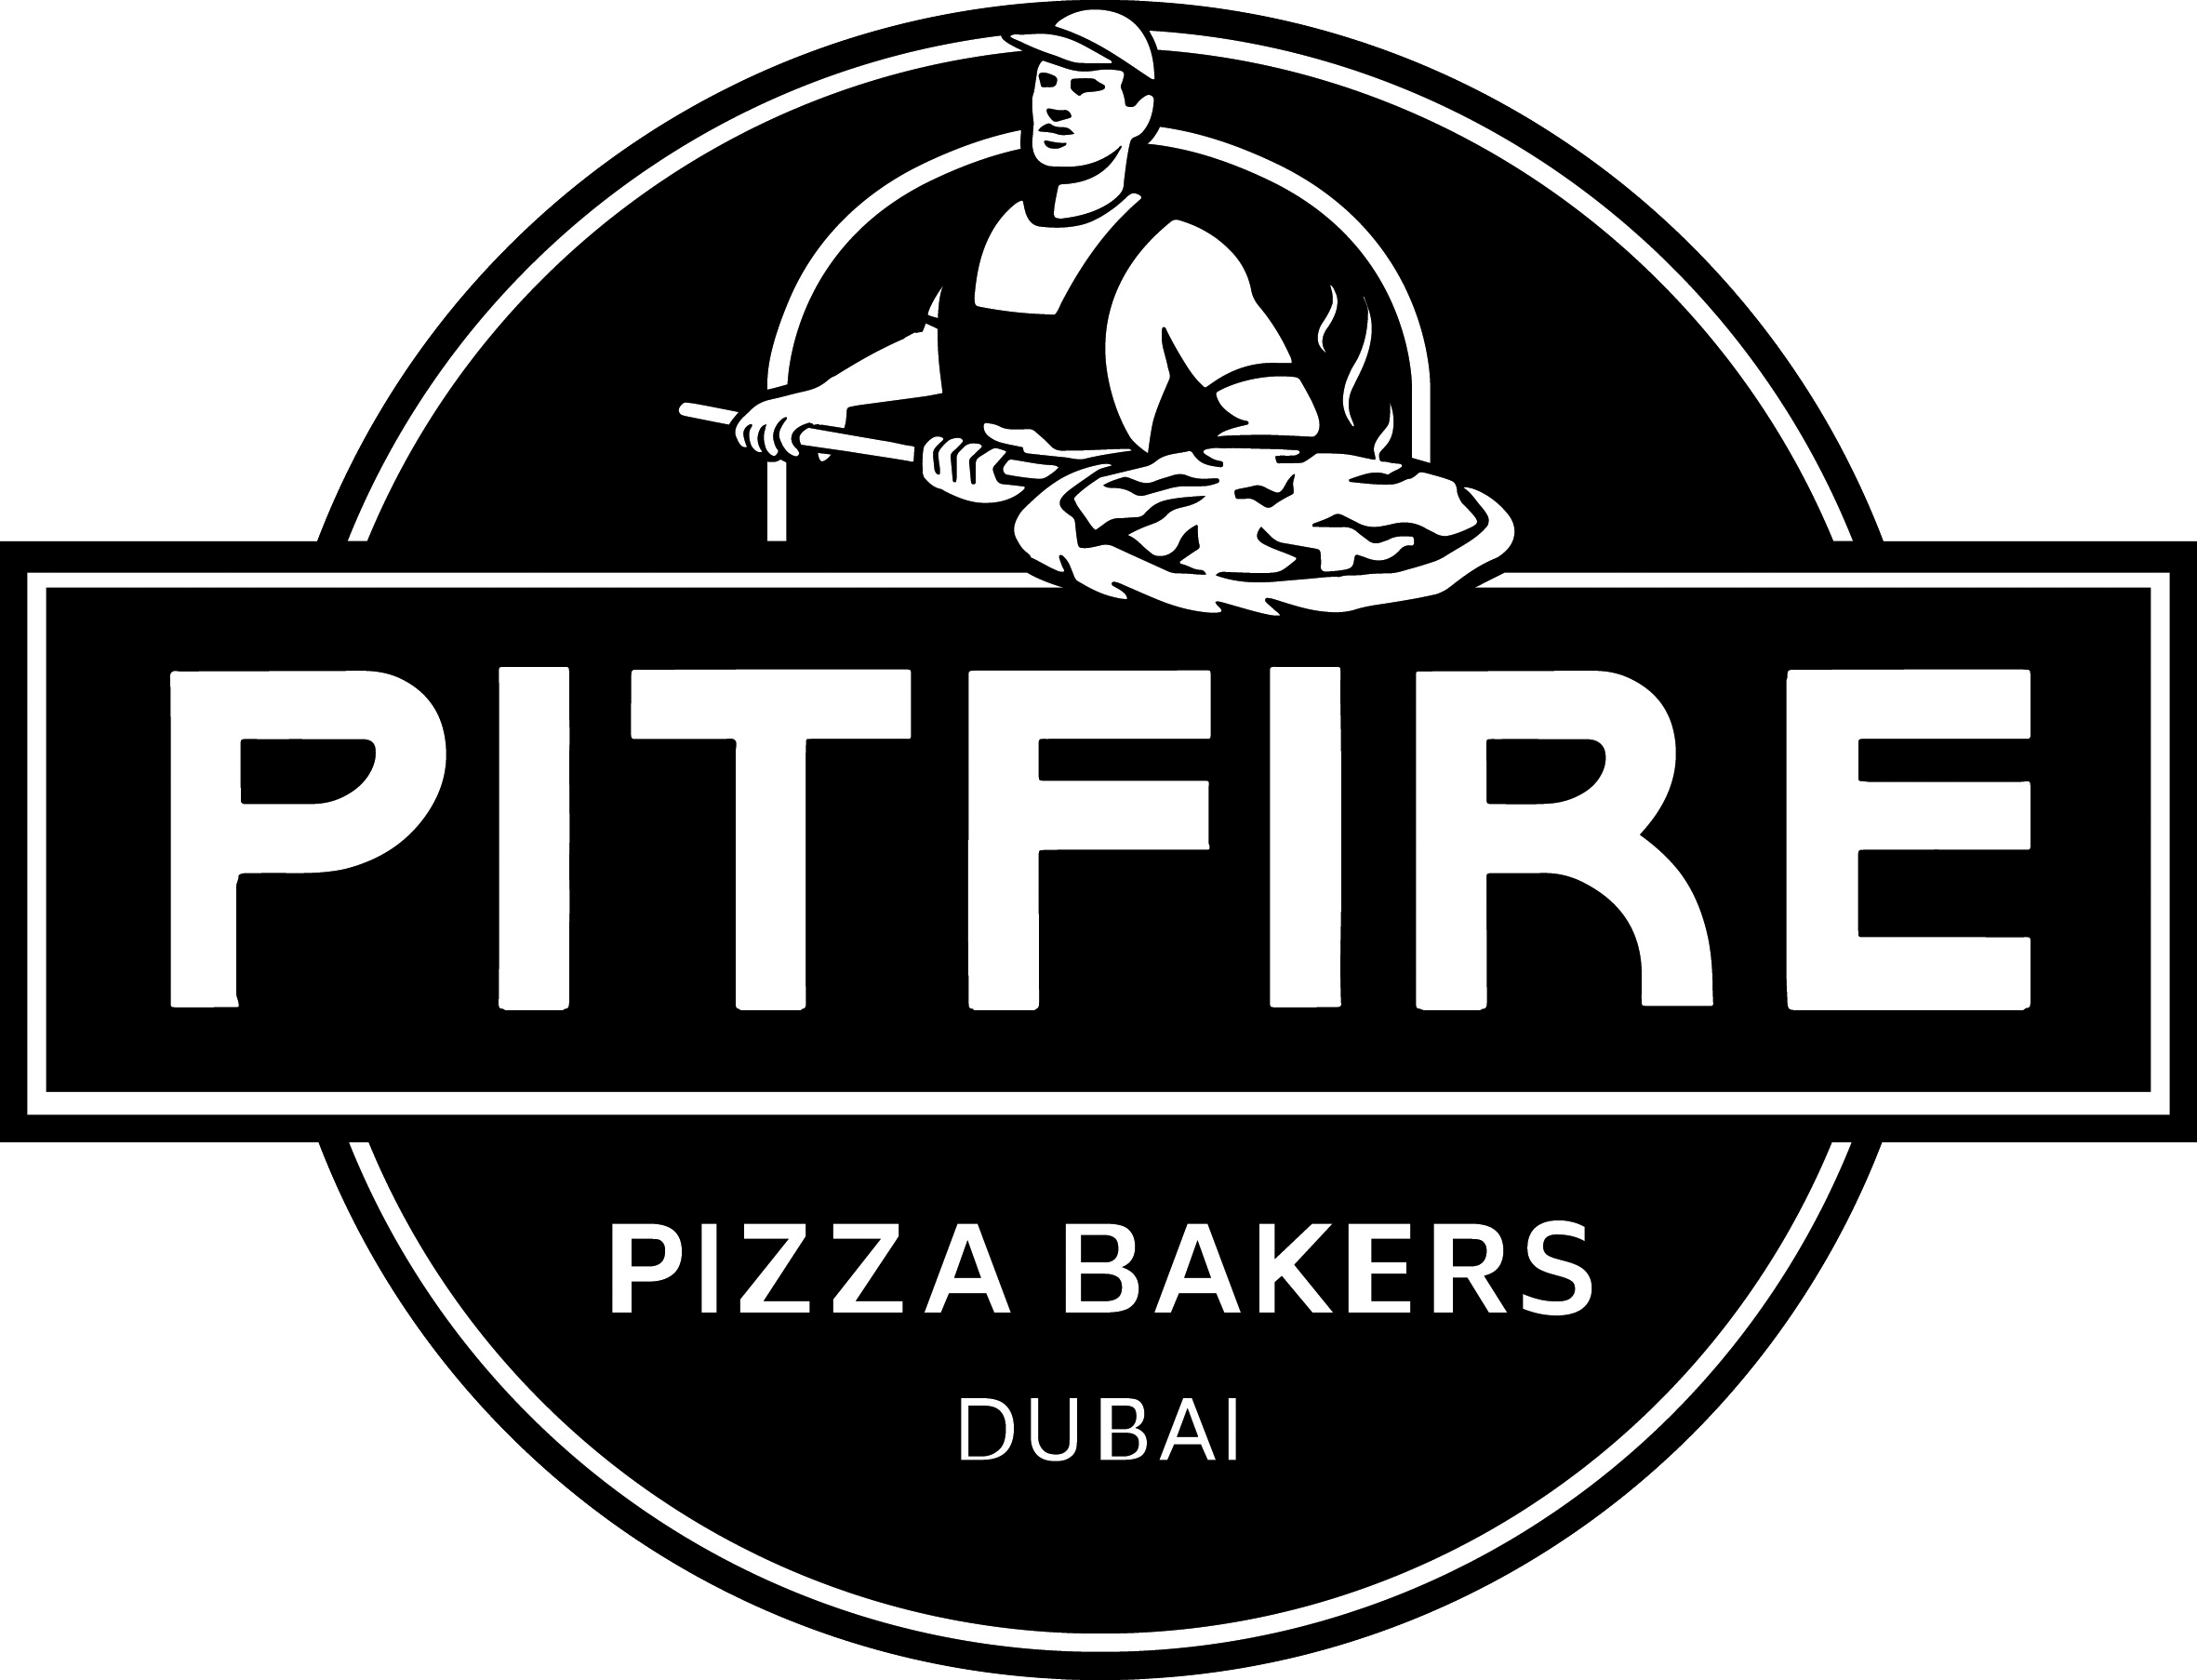 Spitfire Pizza Logo - Dubai's Favourite Pizza